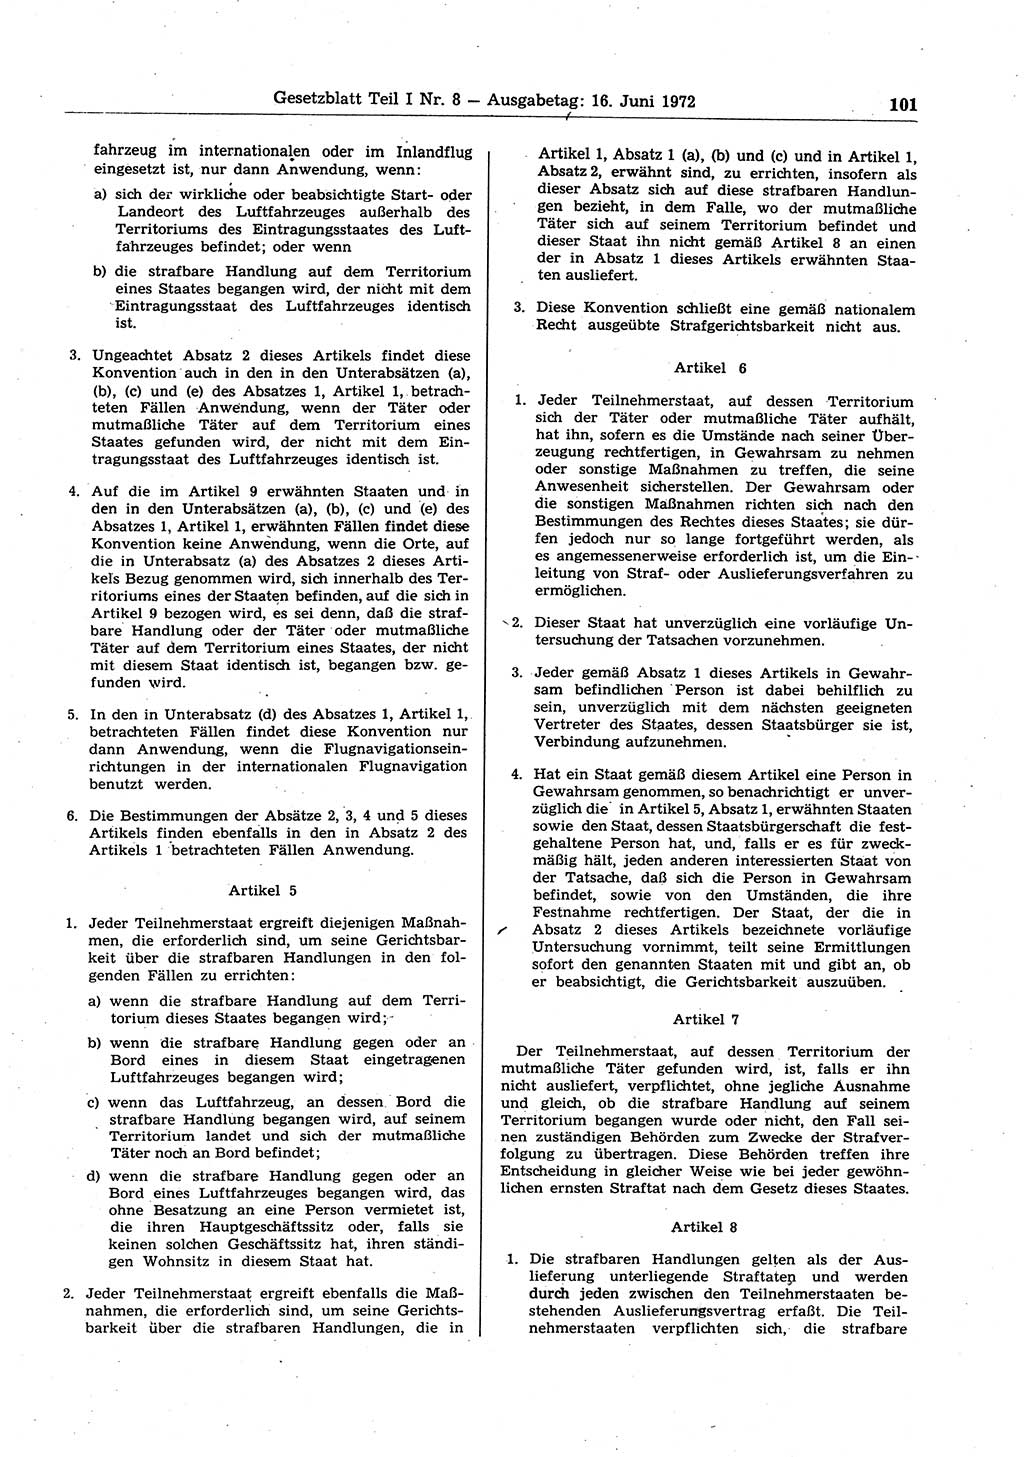 Gesetzblatt (GBl.) der Deutschen Demokratischen Republik (DDR) Teil Ⅰ 1972, Seite 101 (GBl. DDR Ⅰ 1972, S. 101)